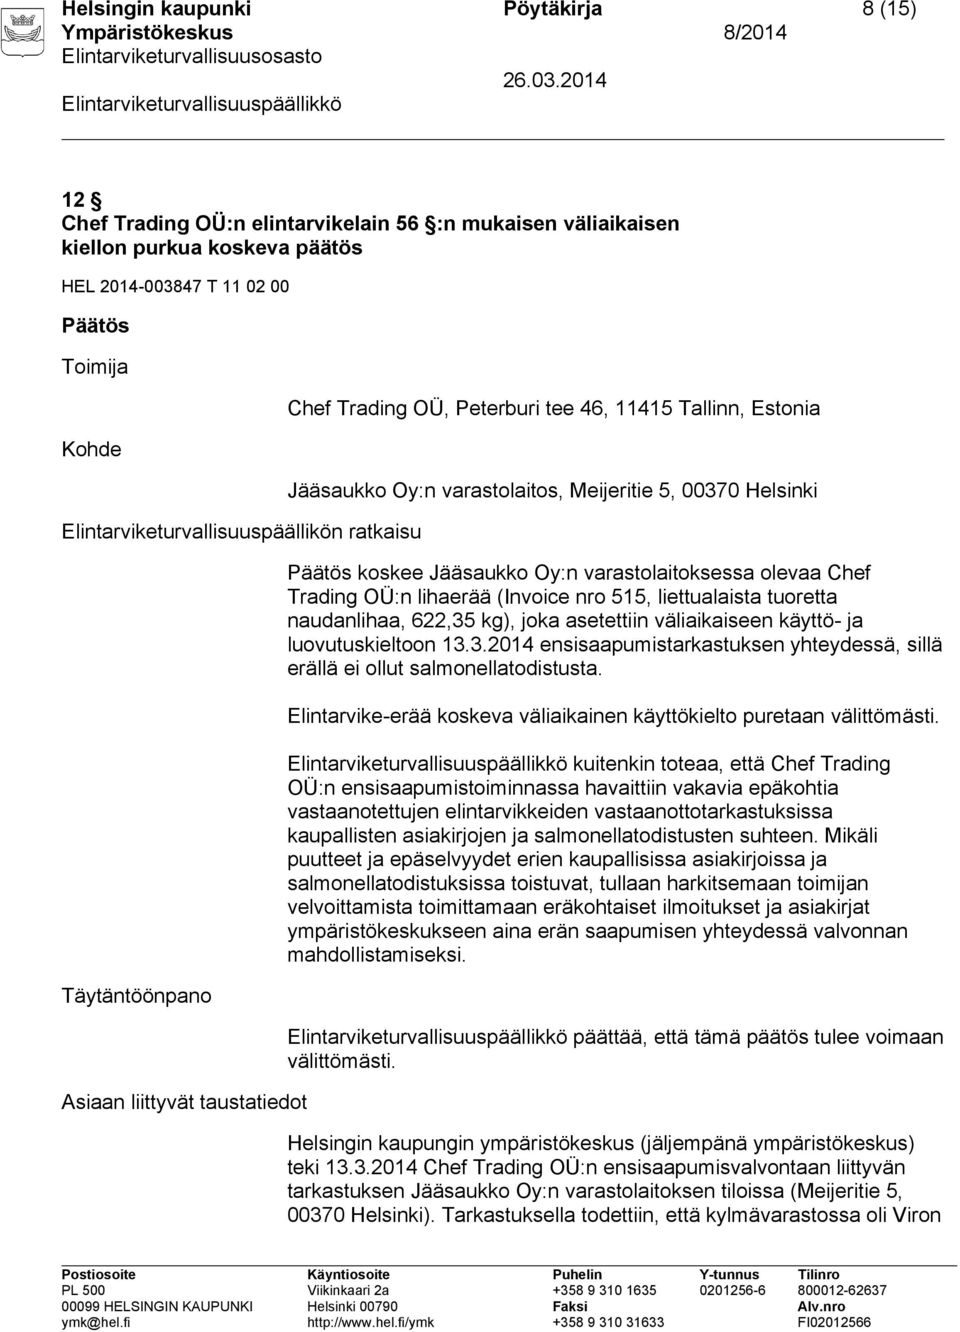 Helsinki Päätös koskee Jääsaukko Oy:n varastolaitoksessa olevaa Chef Trading OÜ:n lihaerää (Invoice nro 515, liettualaista tuoretta naudanlihaa, 622,35 kg), joka asetettiin väliaikaiseen käyttö- ja